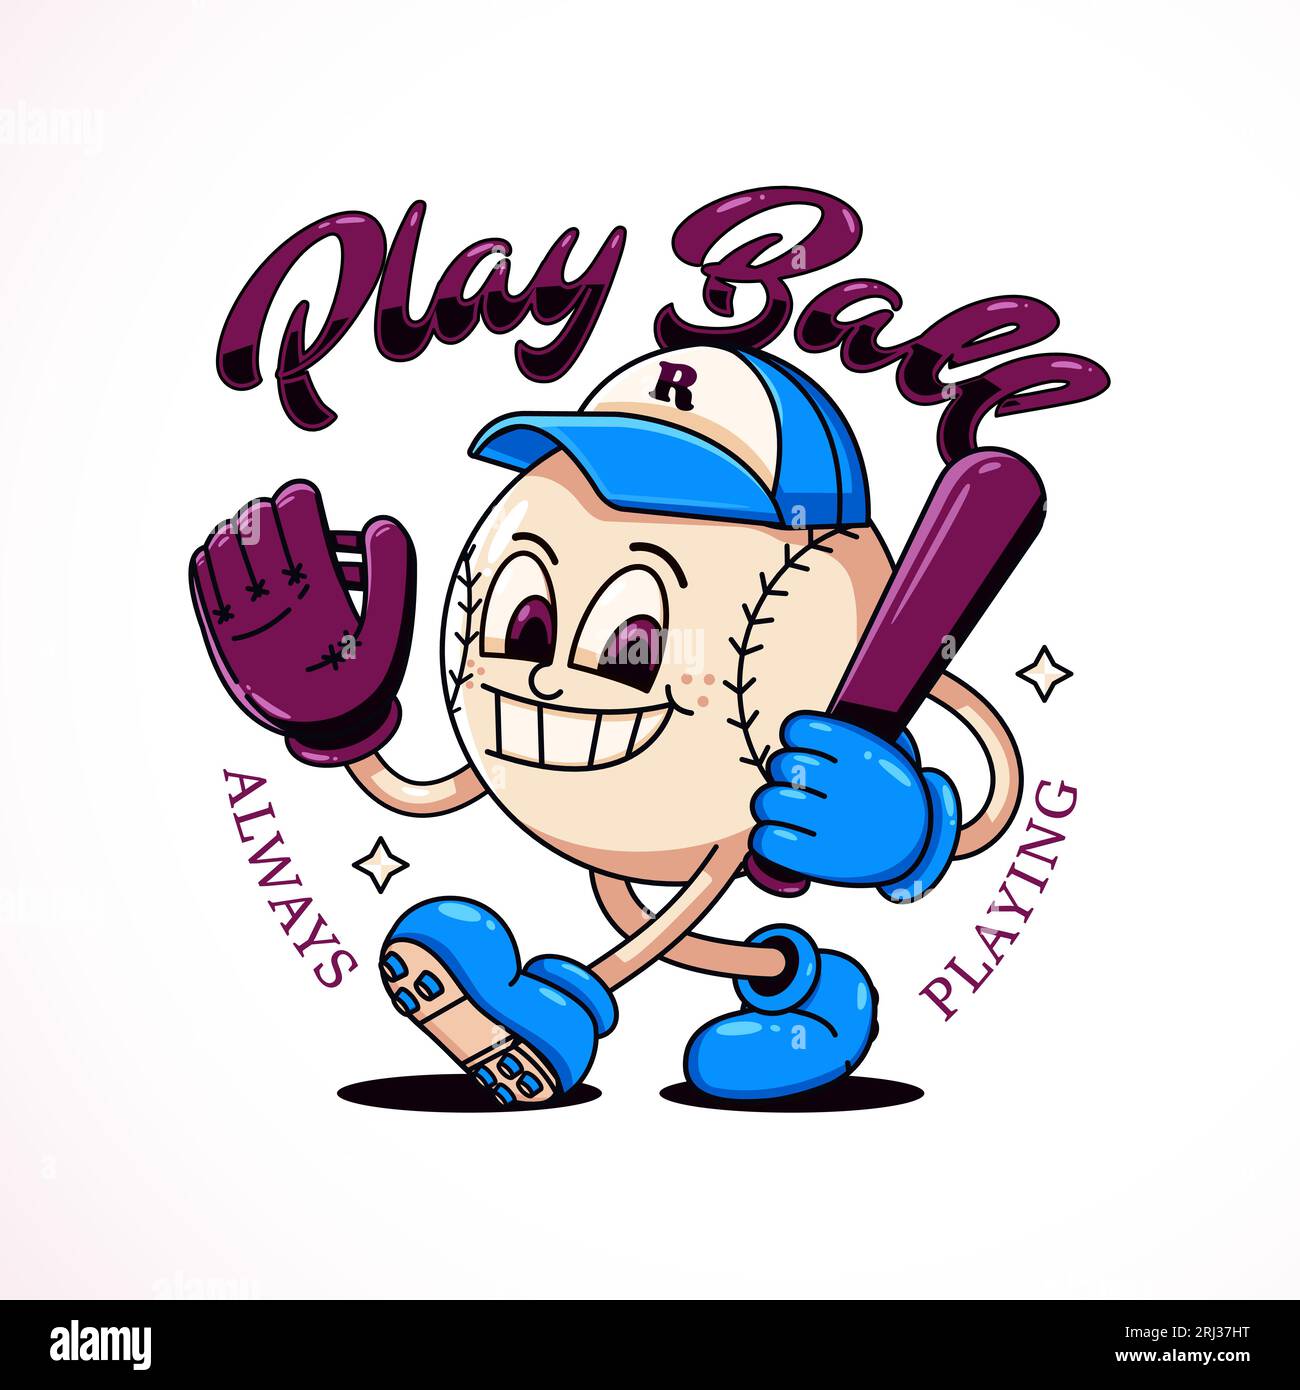 Play ball, une illustration de dessin animé d'une mascotte de baseball. Parfait pour les logos, t-shirts, autocollants et affiches Illustration de Vecteur